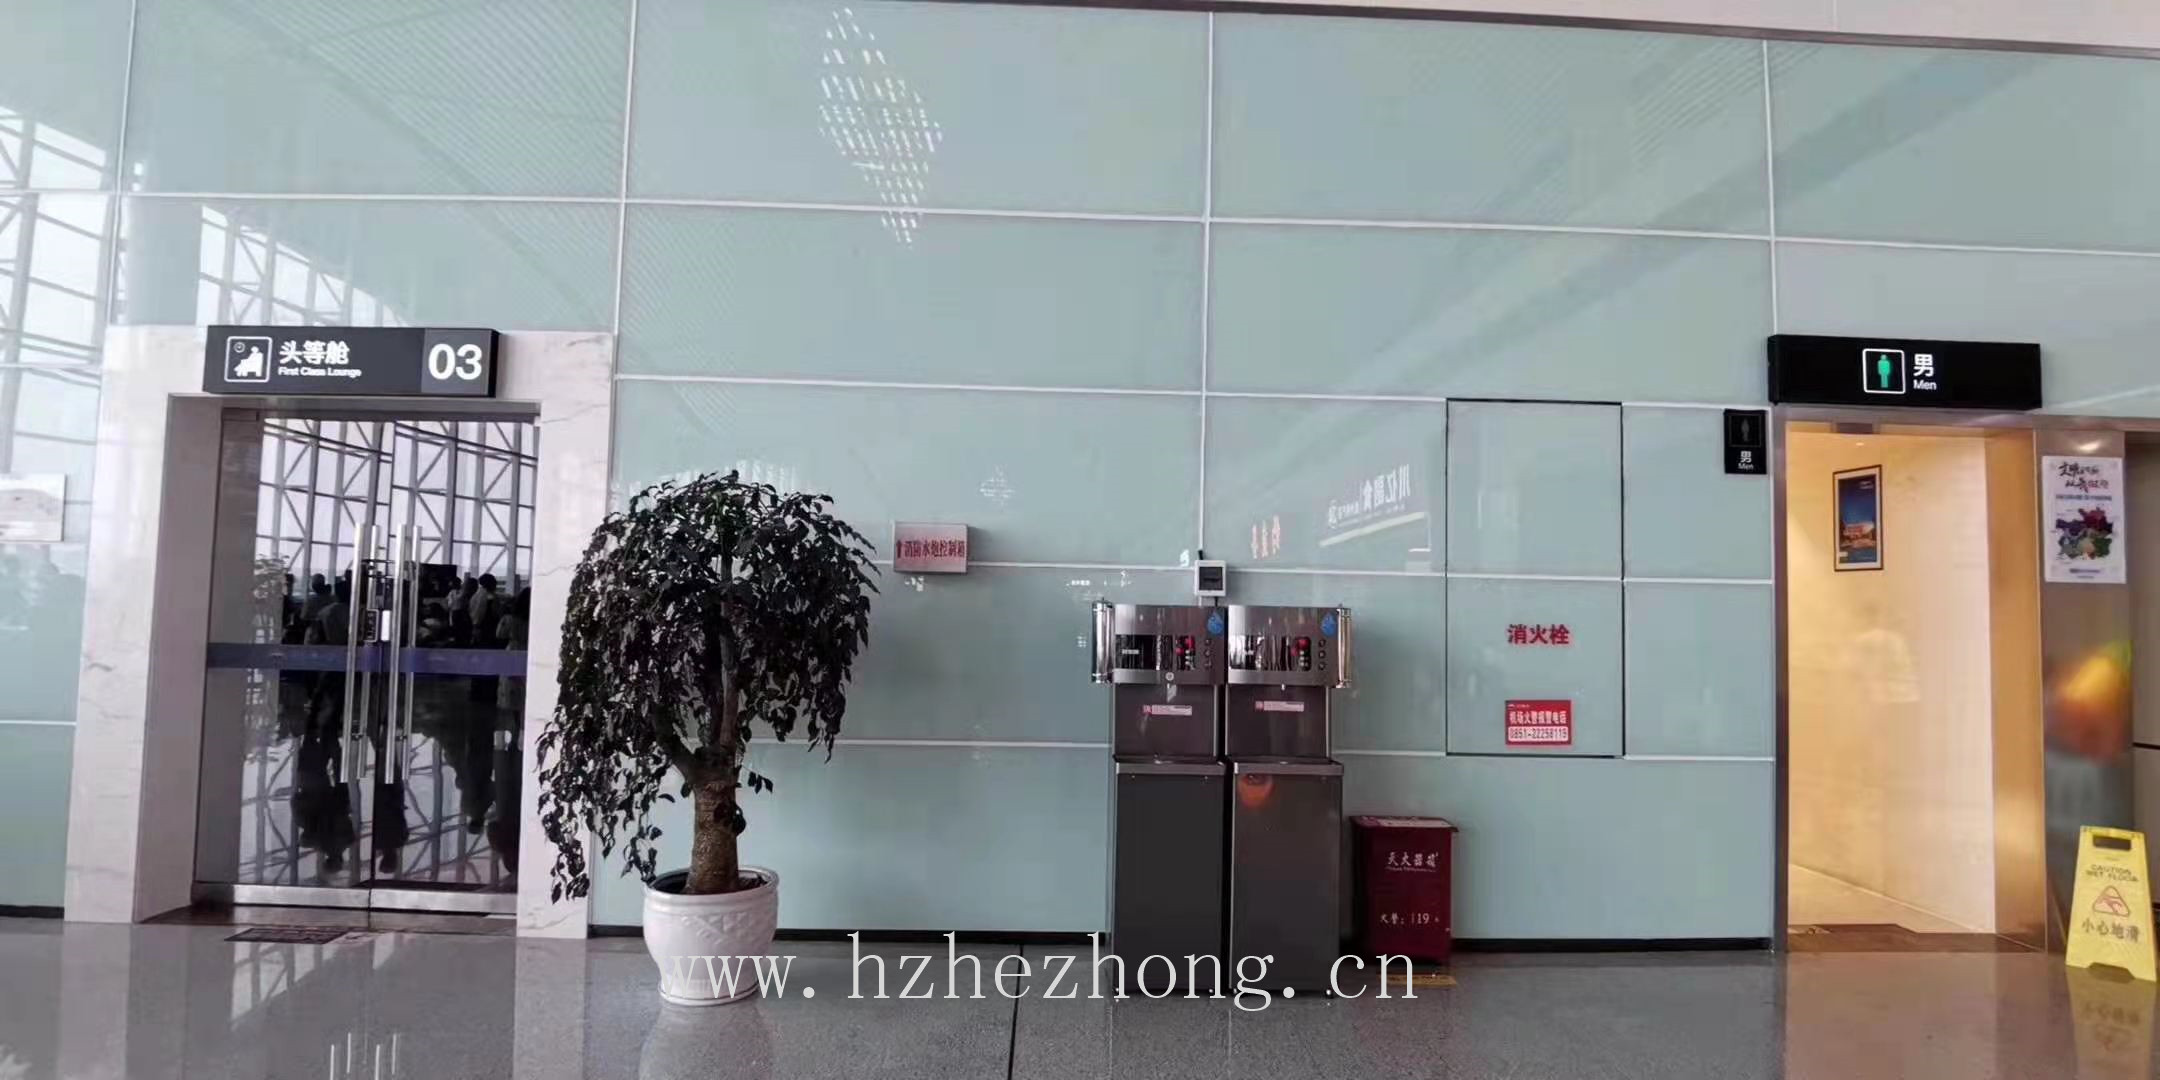 How about he Zhong water purifier Guizhou Maotai Airport use he Zhong brand water dispenser